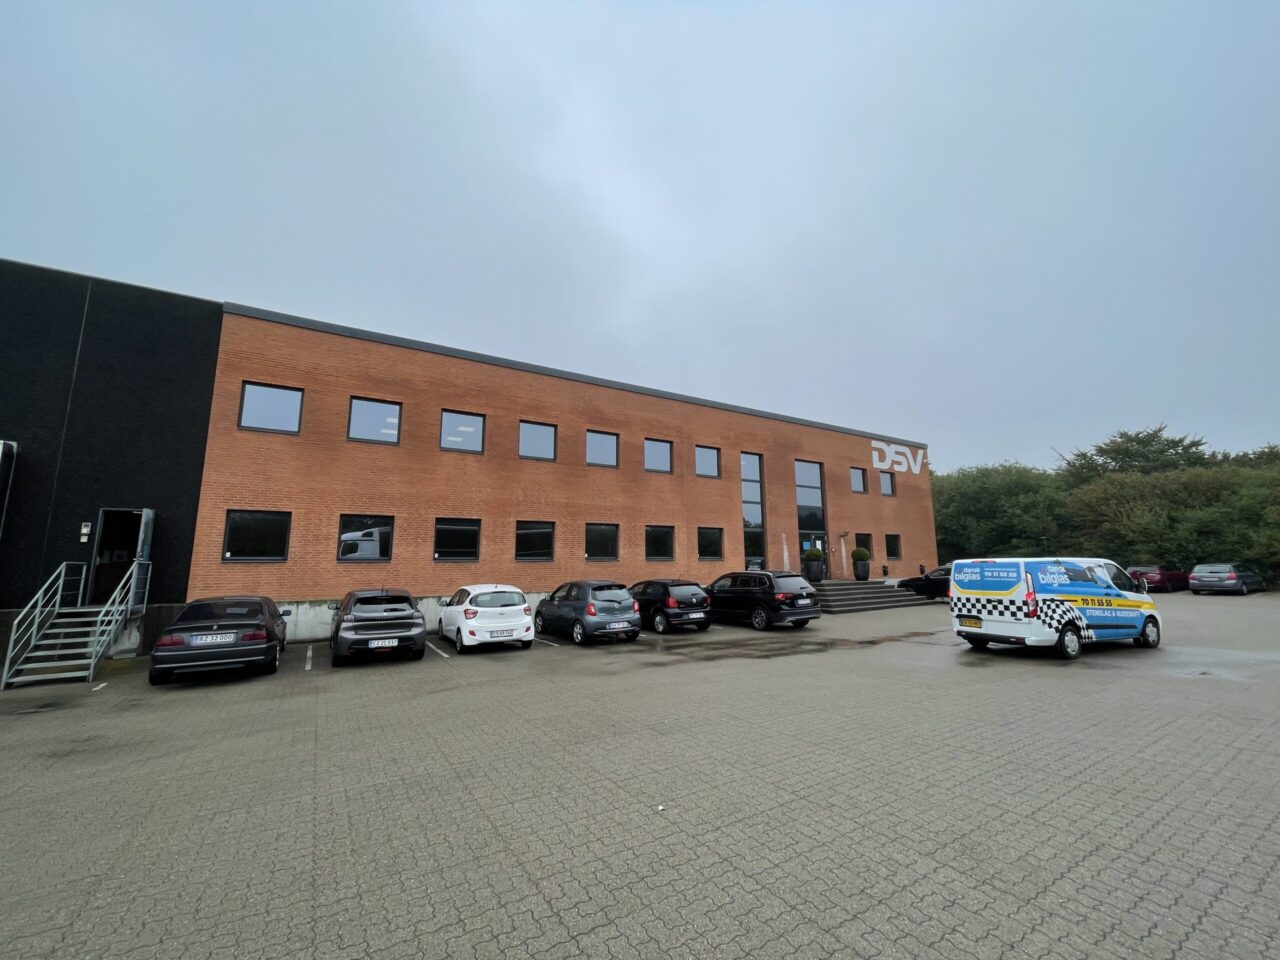 Kontor til leje i Kolding - Rød murstens bygning med stor parkeringsplads og mange biler